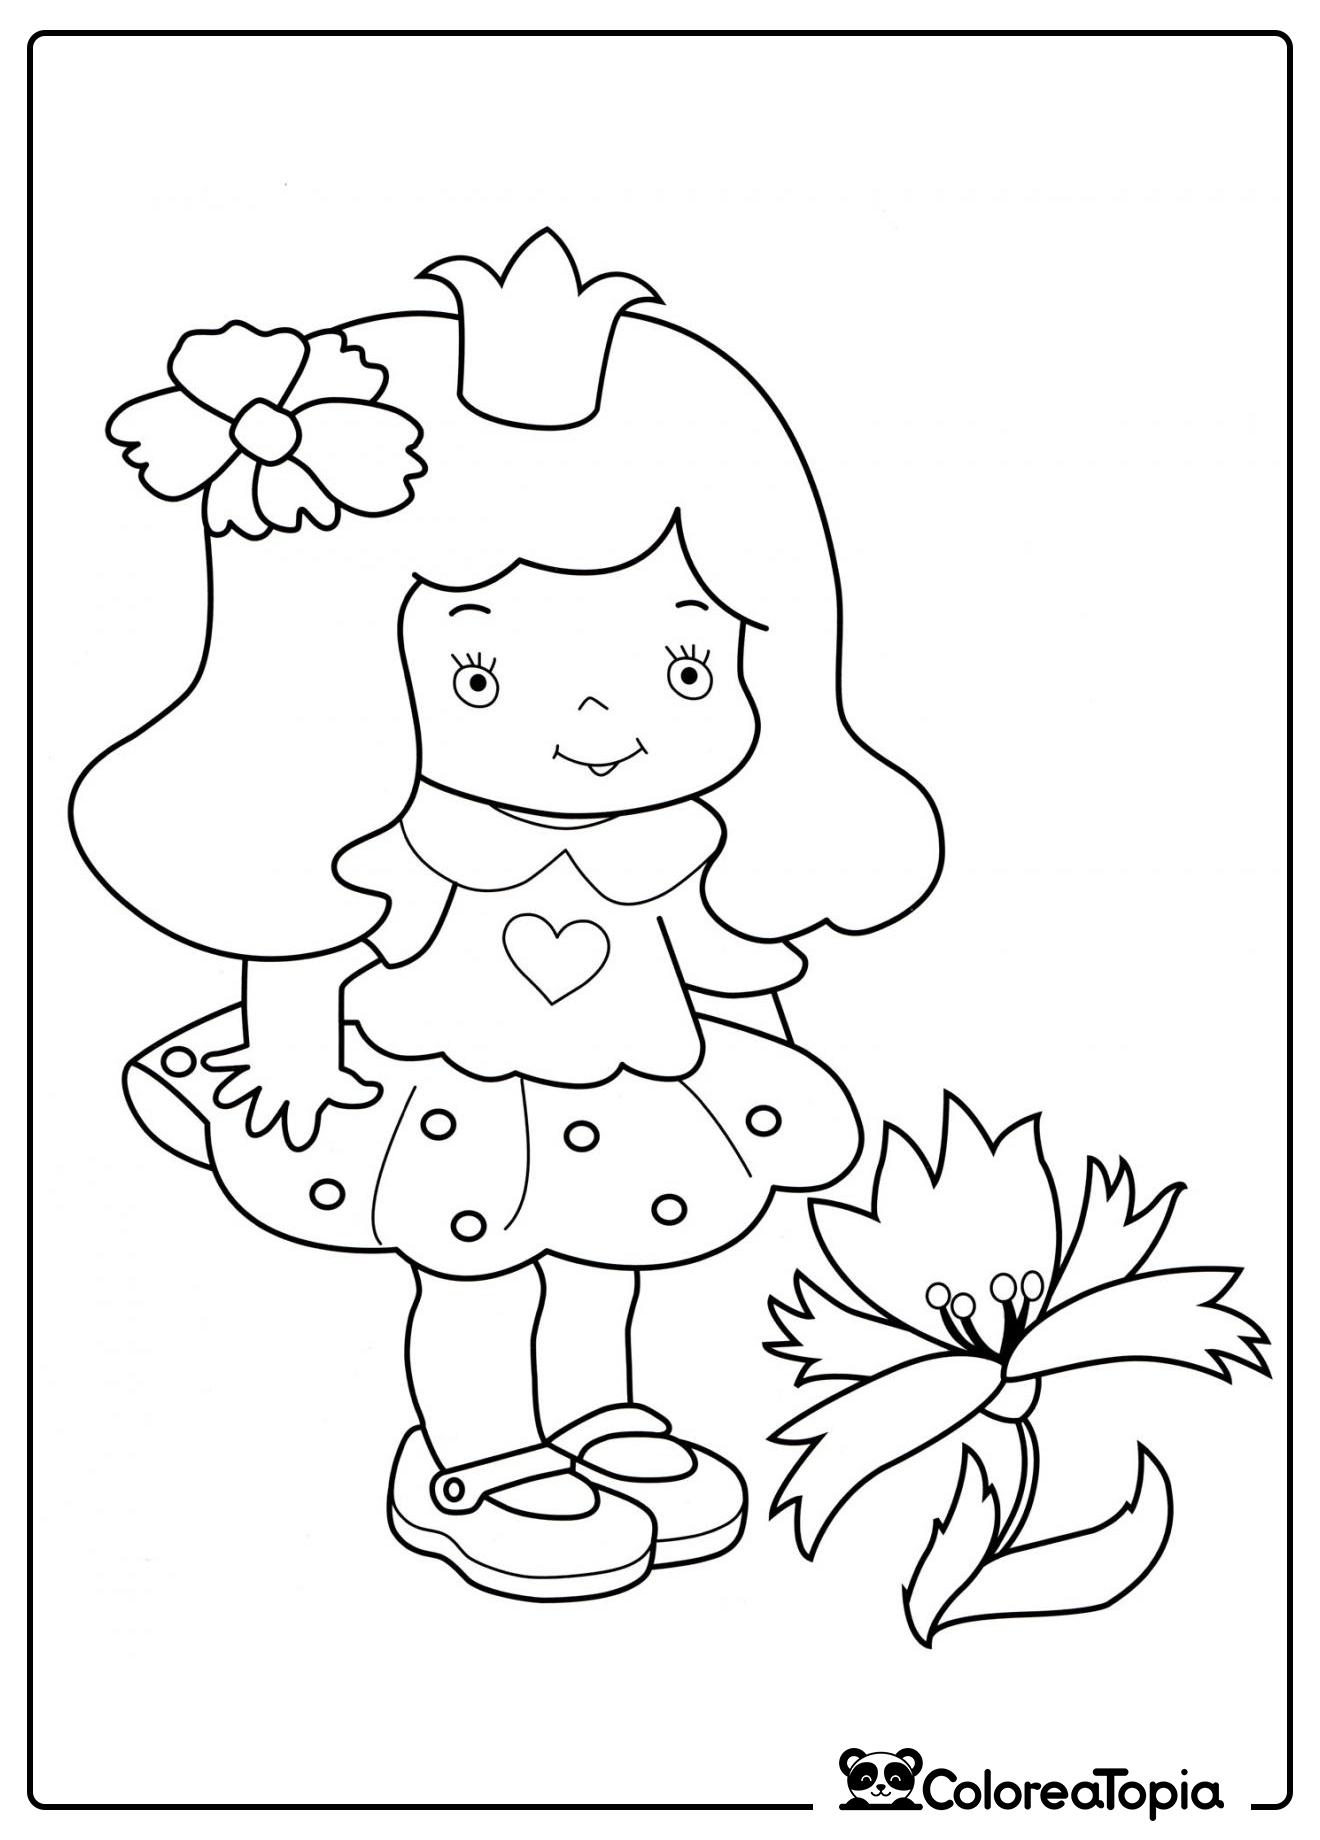 Princesa y flor - dibujo para colorear